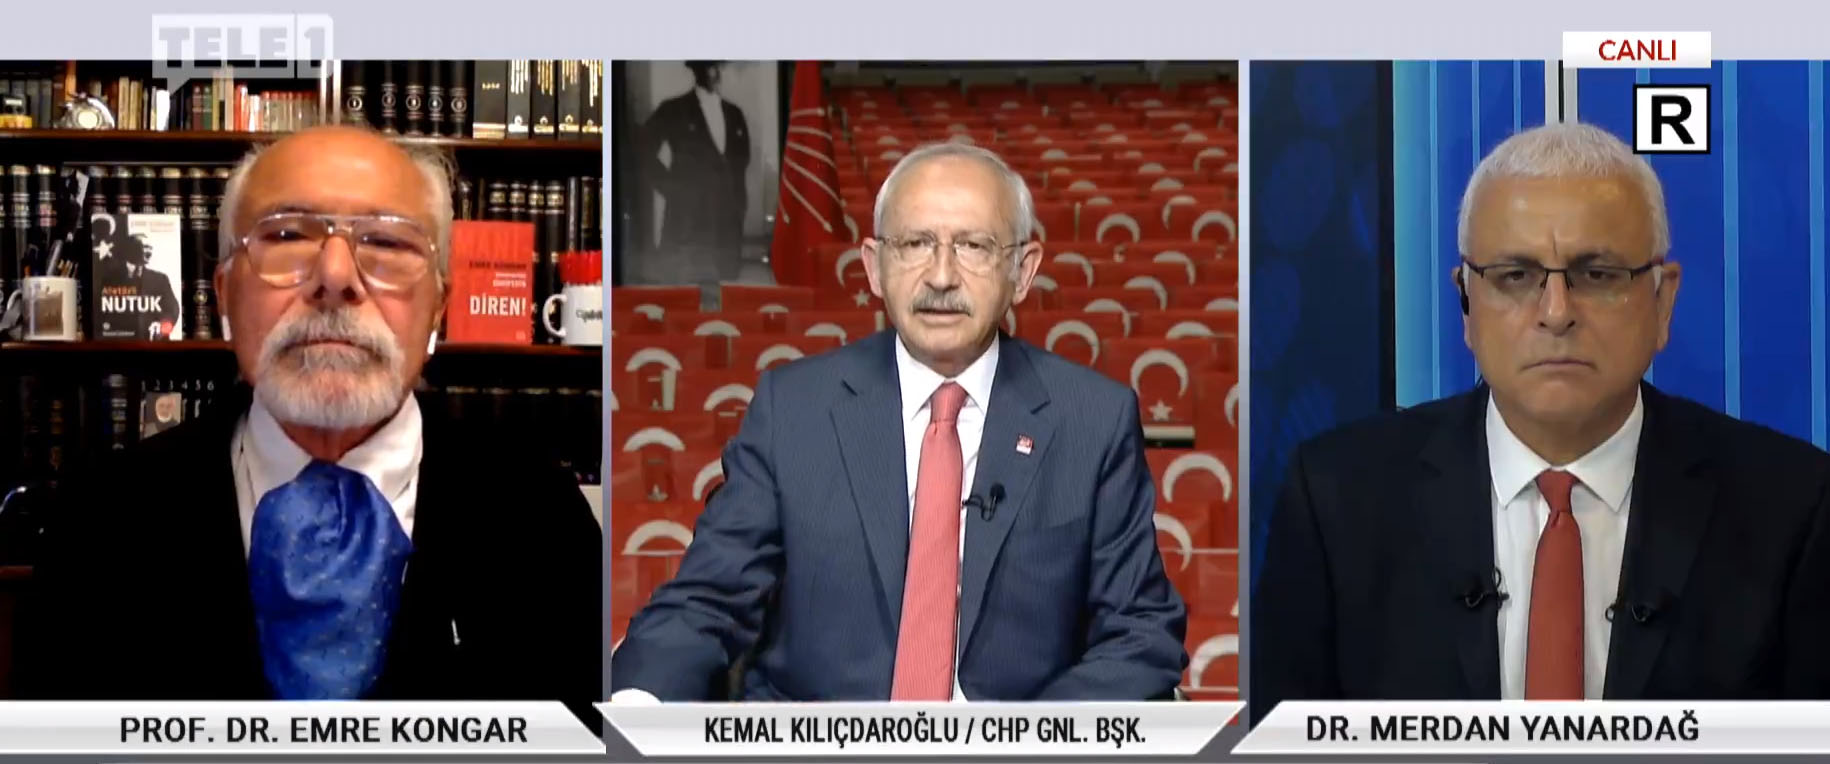 Kılıçdaroğlu: DEVA ya da Gelecek Partisi’ne kumpas kurulursa bozmak demokrasi görevidir